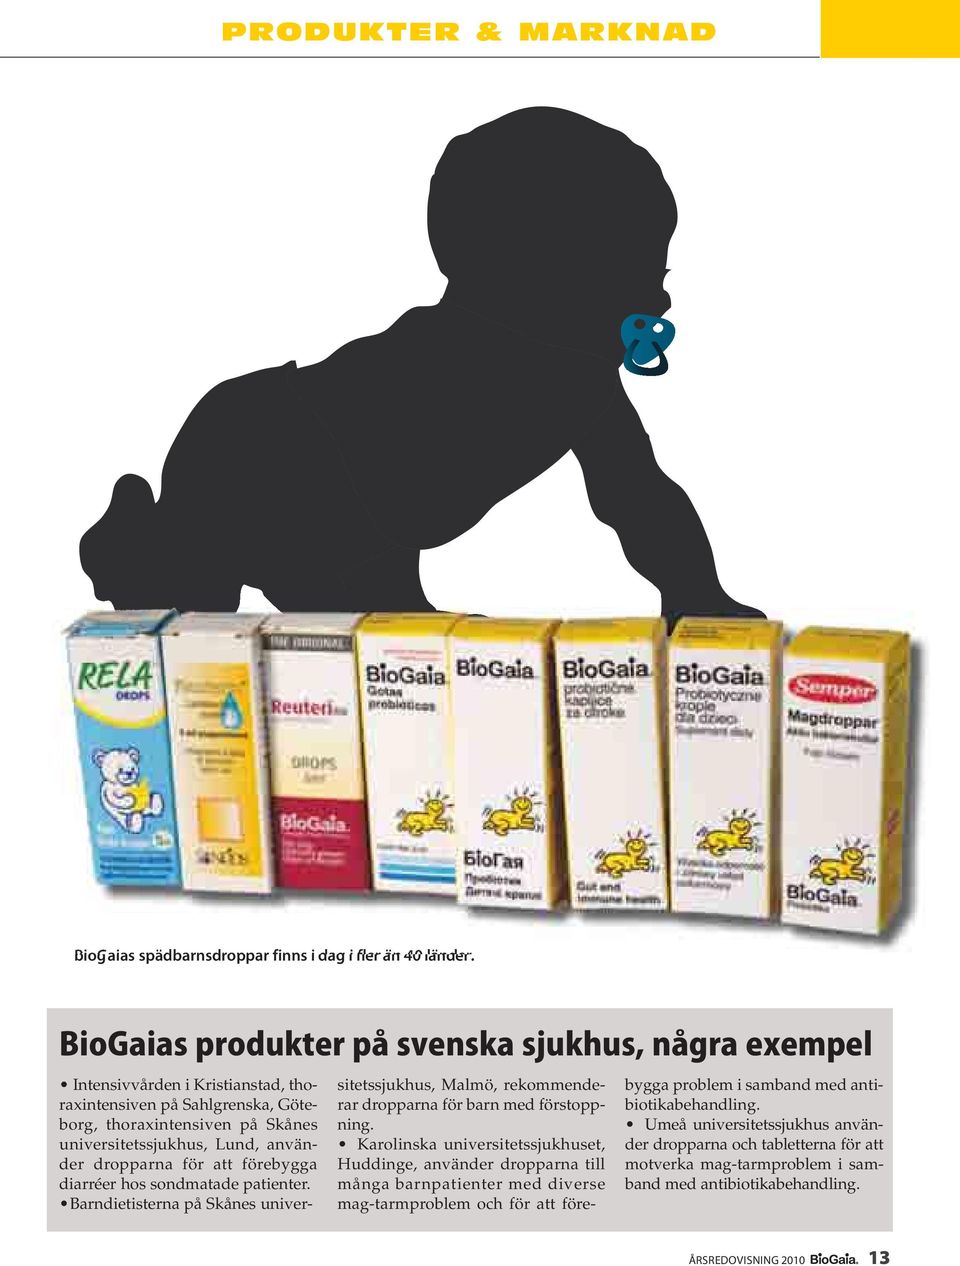 dropparna för att förebygga diarréer hos sondmatade patienter. Barndietisterna på Skånes universitetssjukhus, Malmö, rekommenderar dropparna för barn med förstoppning.